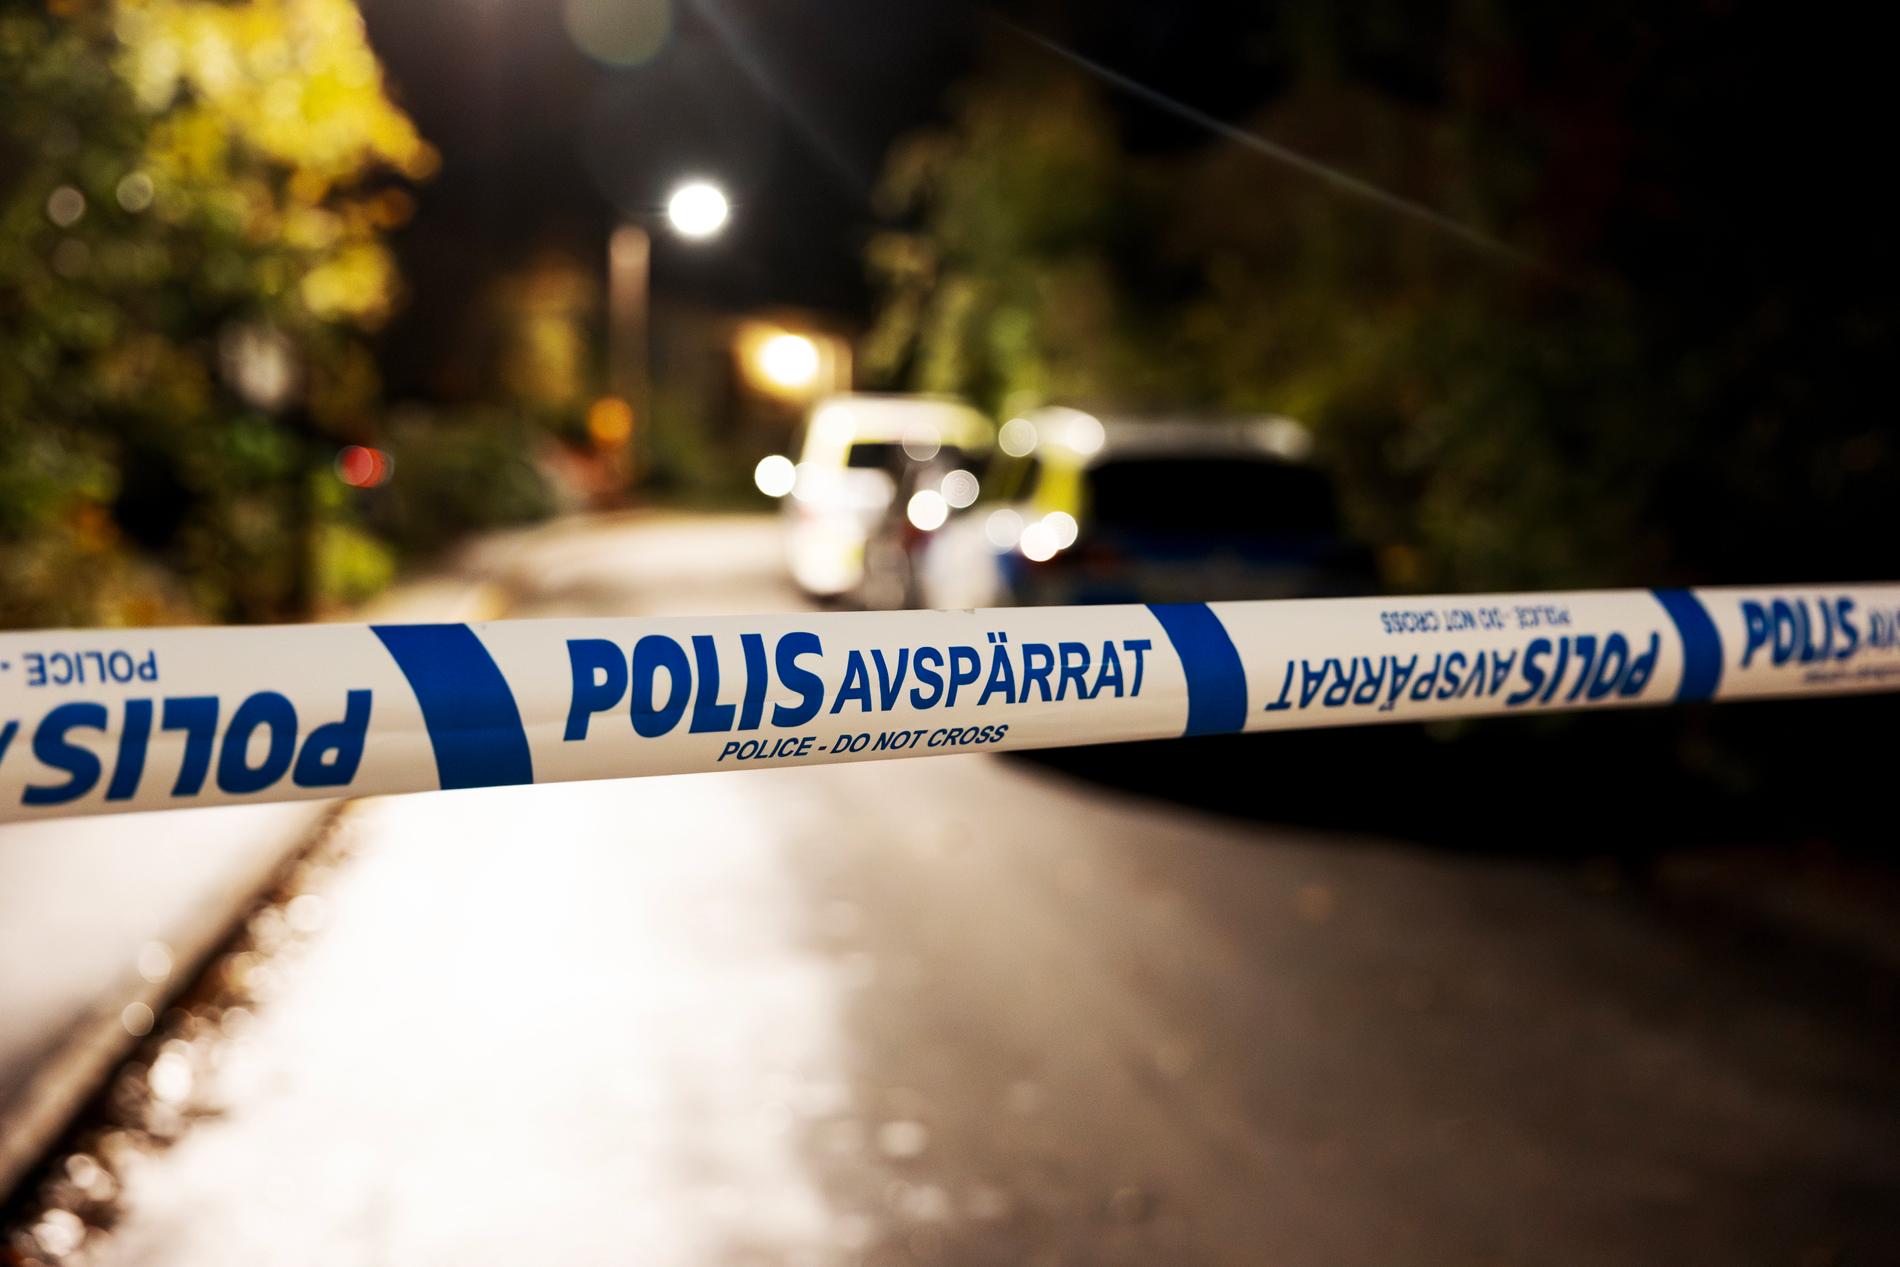 En småbarnsfamilj boende i Västberga besköts i sitt hem natten mot torsdagen den 12 oktober. En man dog och två personer skadades.